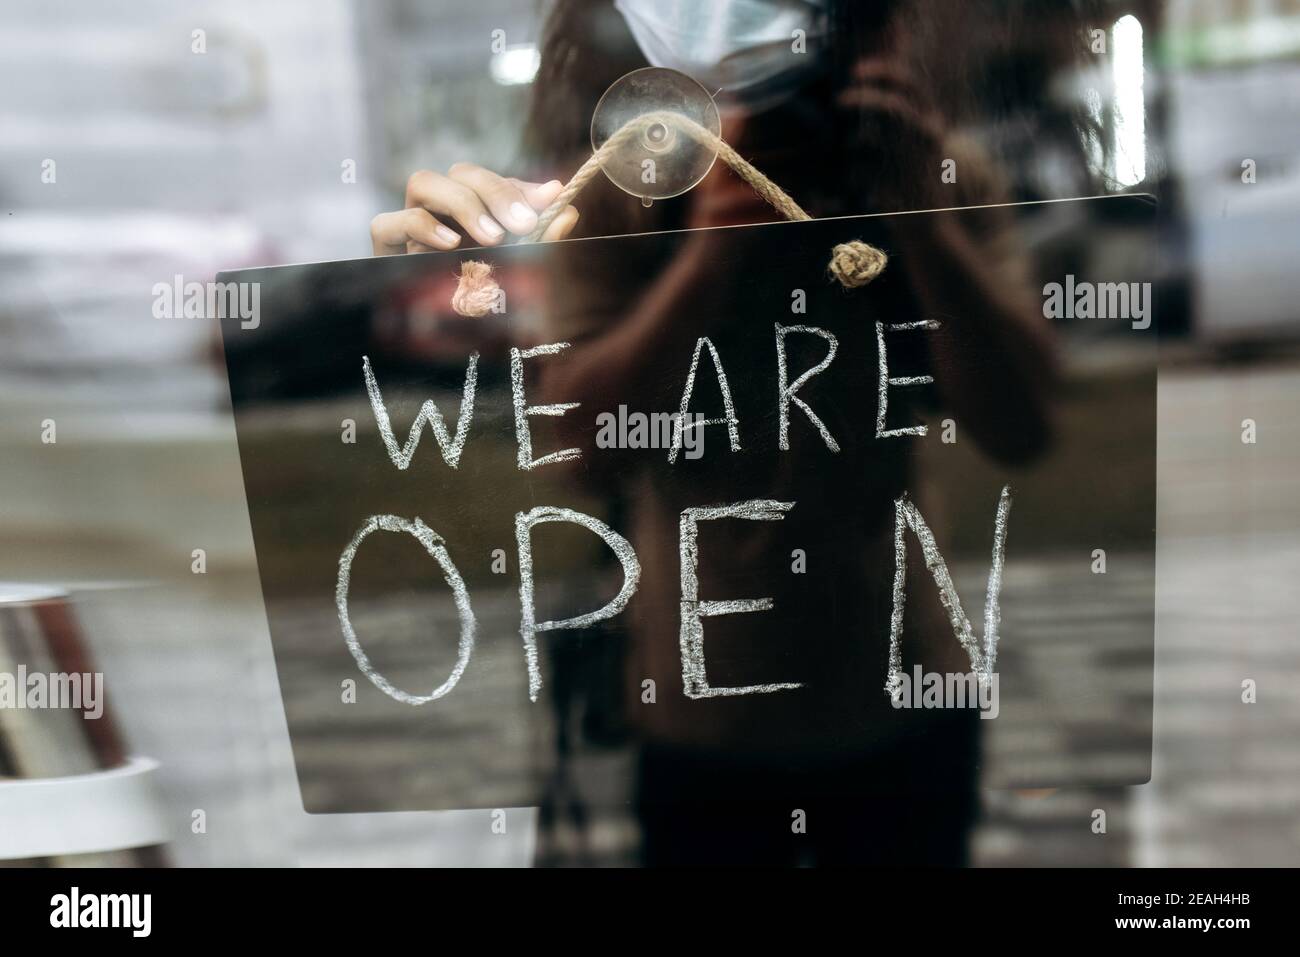 Nahaufnahme Foto von einem Schild SIND WIR AM Eingang zu einem Restaurant oder Café geöffnet. Weibliche Hand hält Schild OFFEN am Eingang zu einem Restaurant, Bar, Café oder Shop Stockfoto